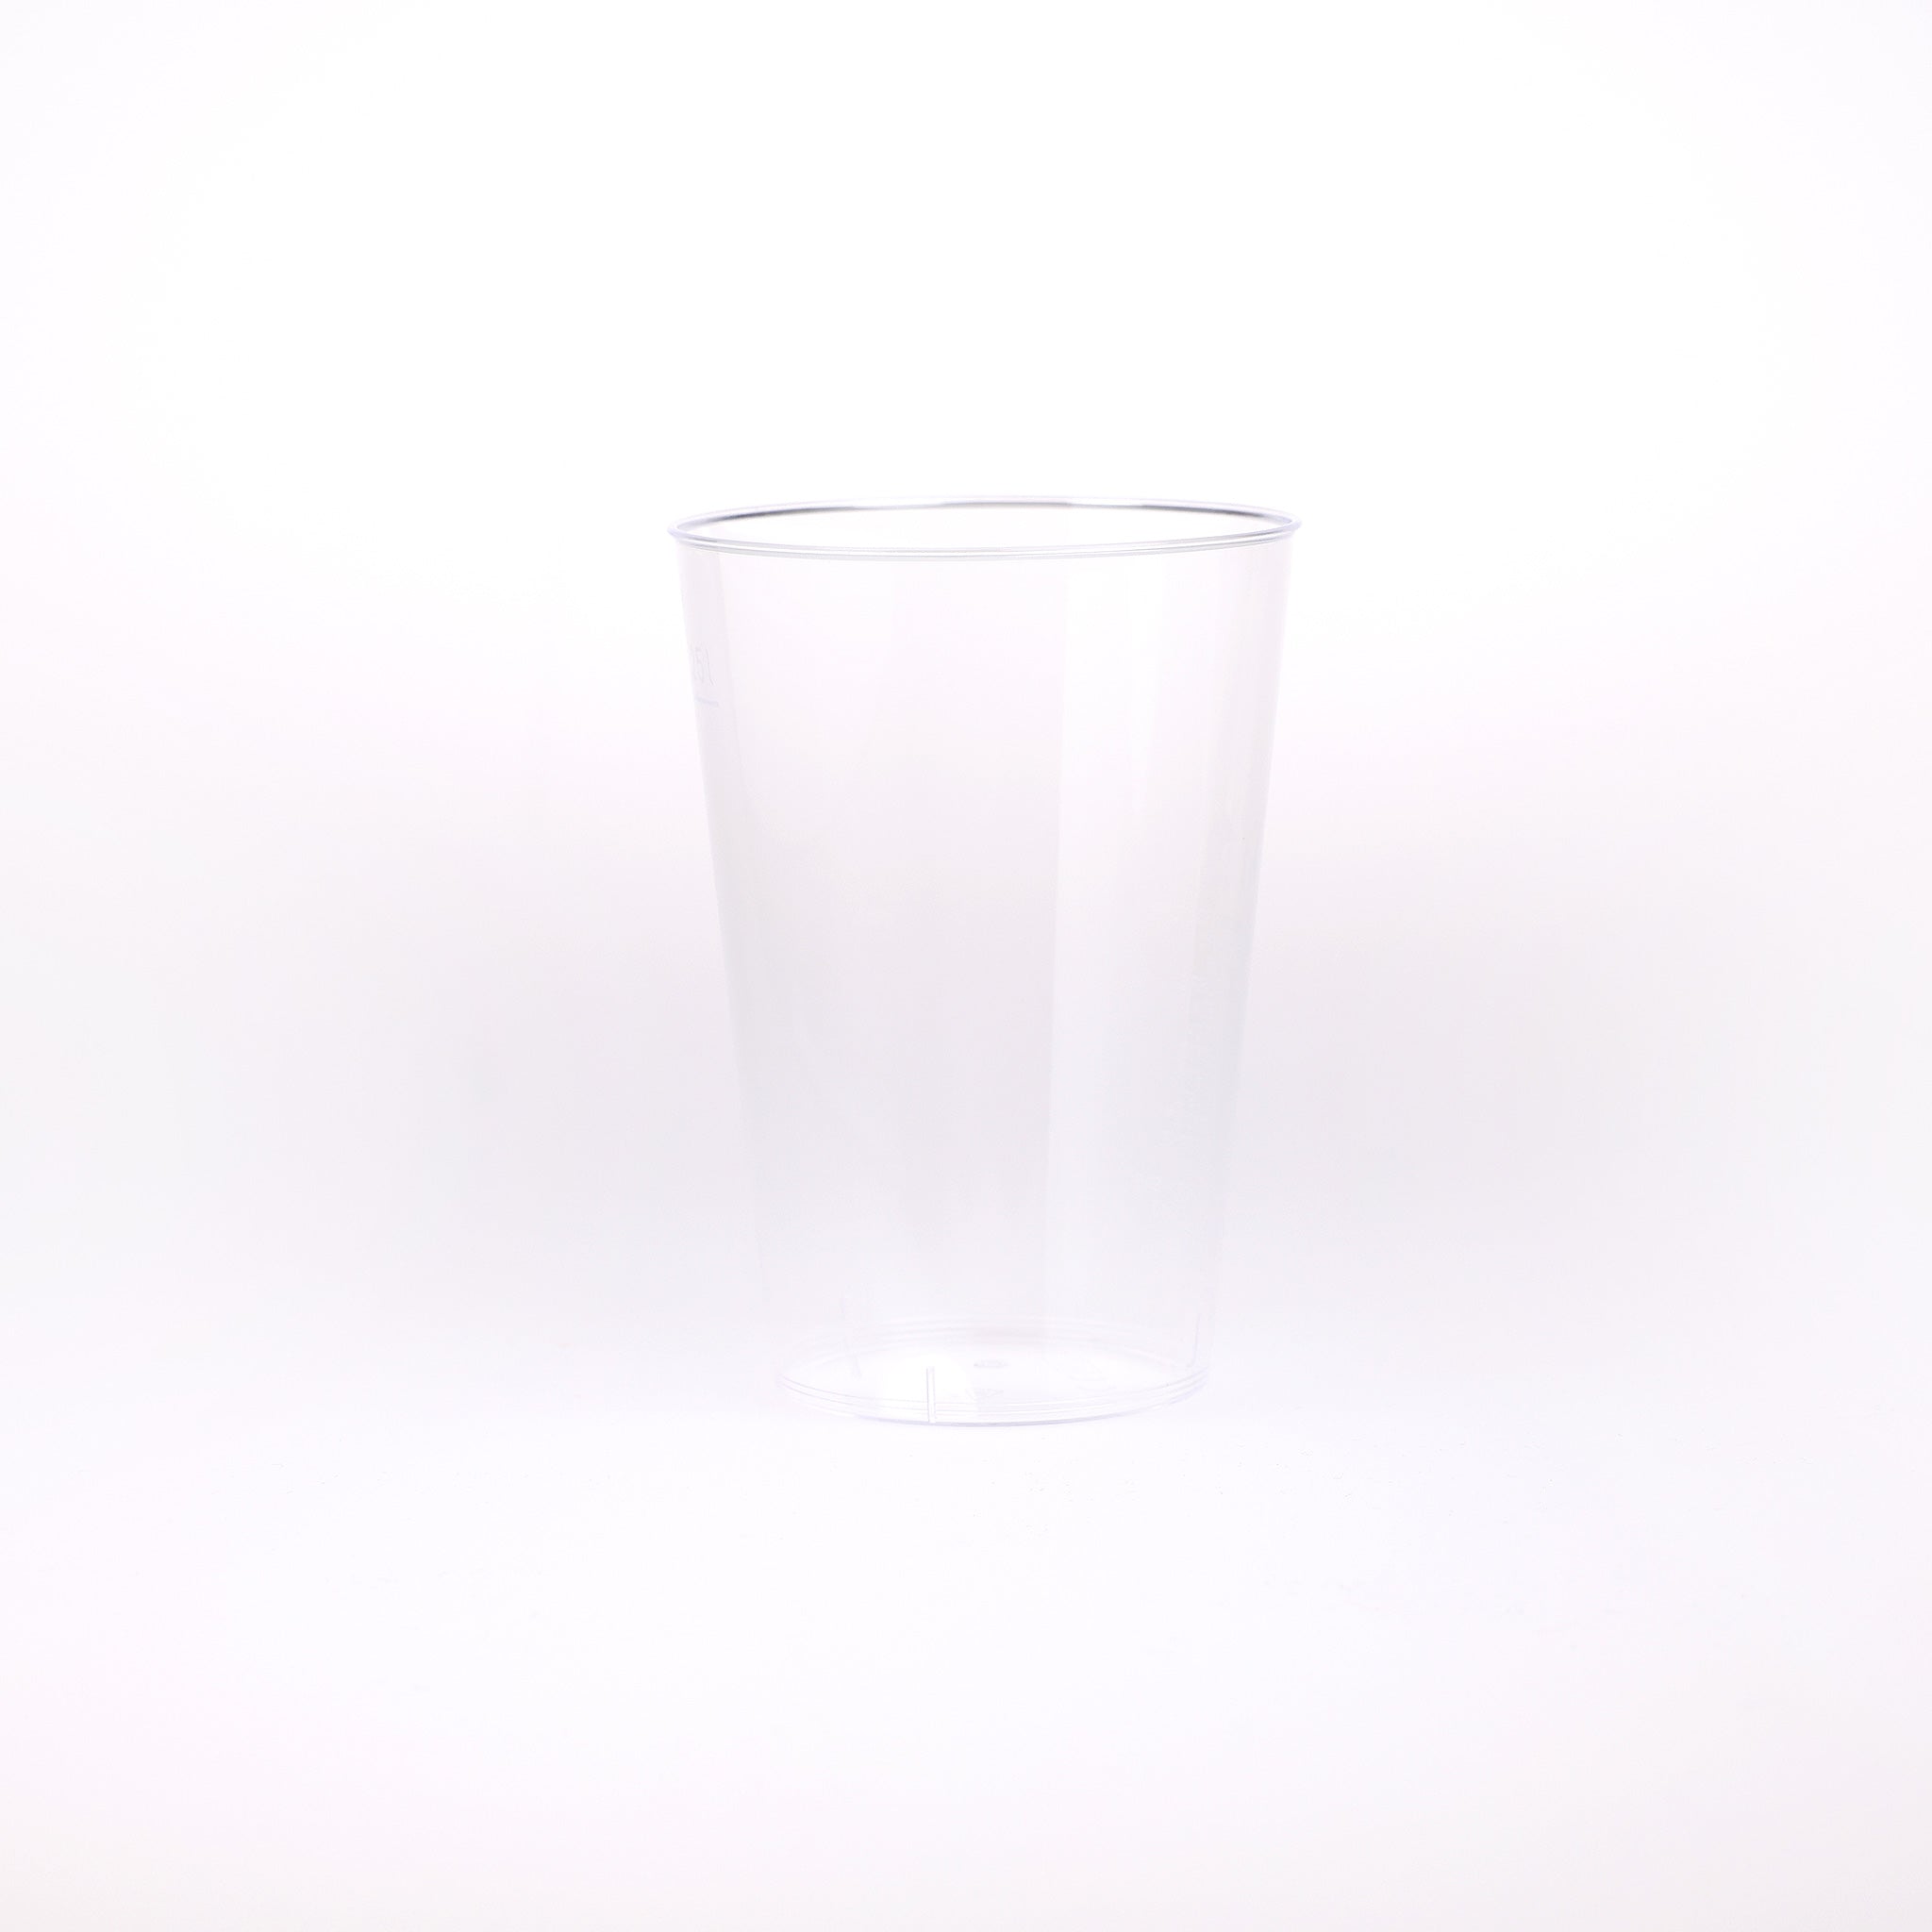 Splintfri plastglas fra Cares.dk. Kan indeholde 25 cl. til skænkekanten og 33 cl. til glassets top, og er til engangsbrug.